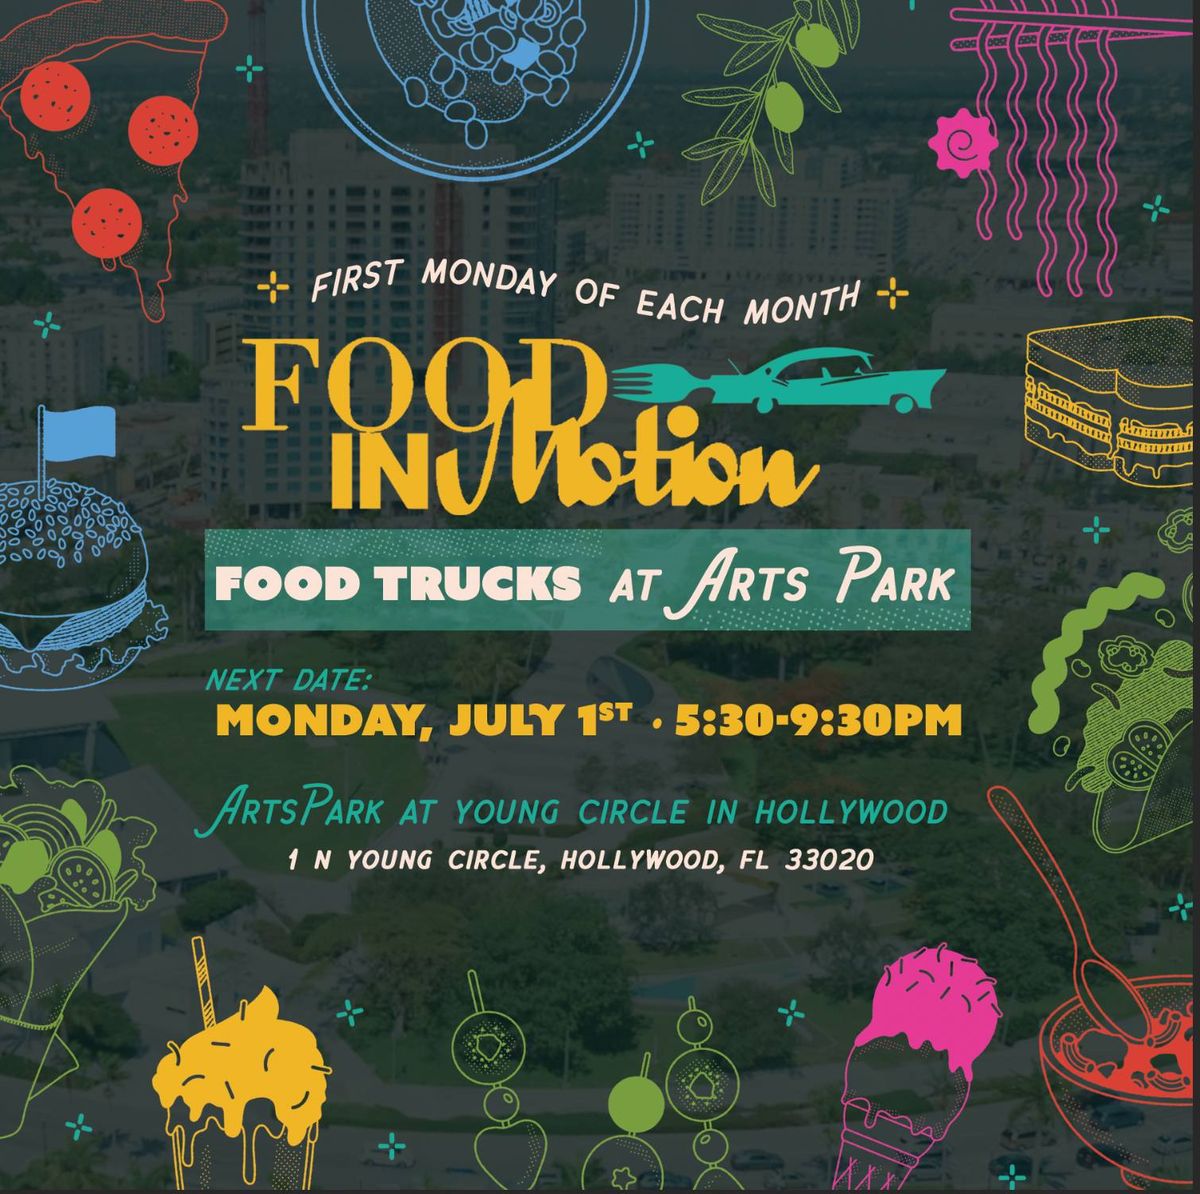 Food Trucks at Arts Park in Hollywood